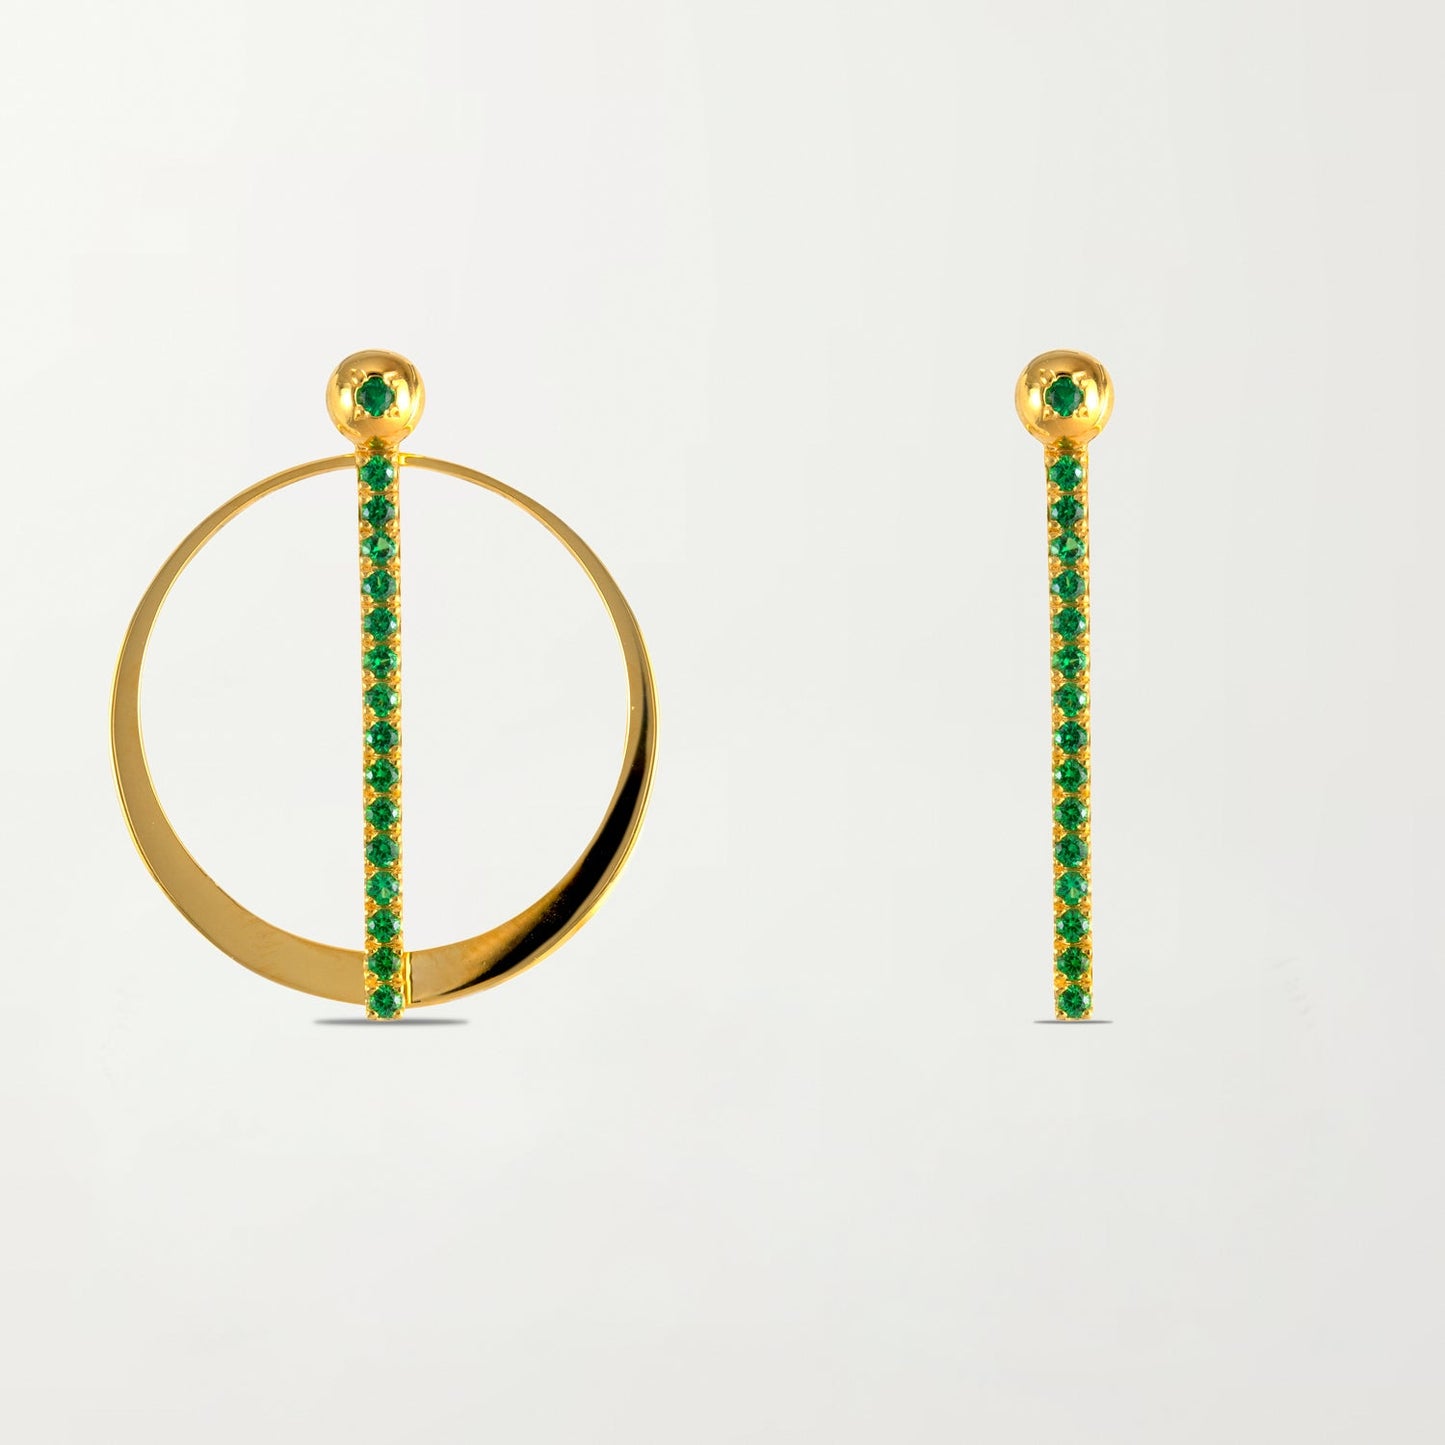 The Barcelona Earrings in Emerald Green